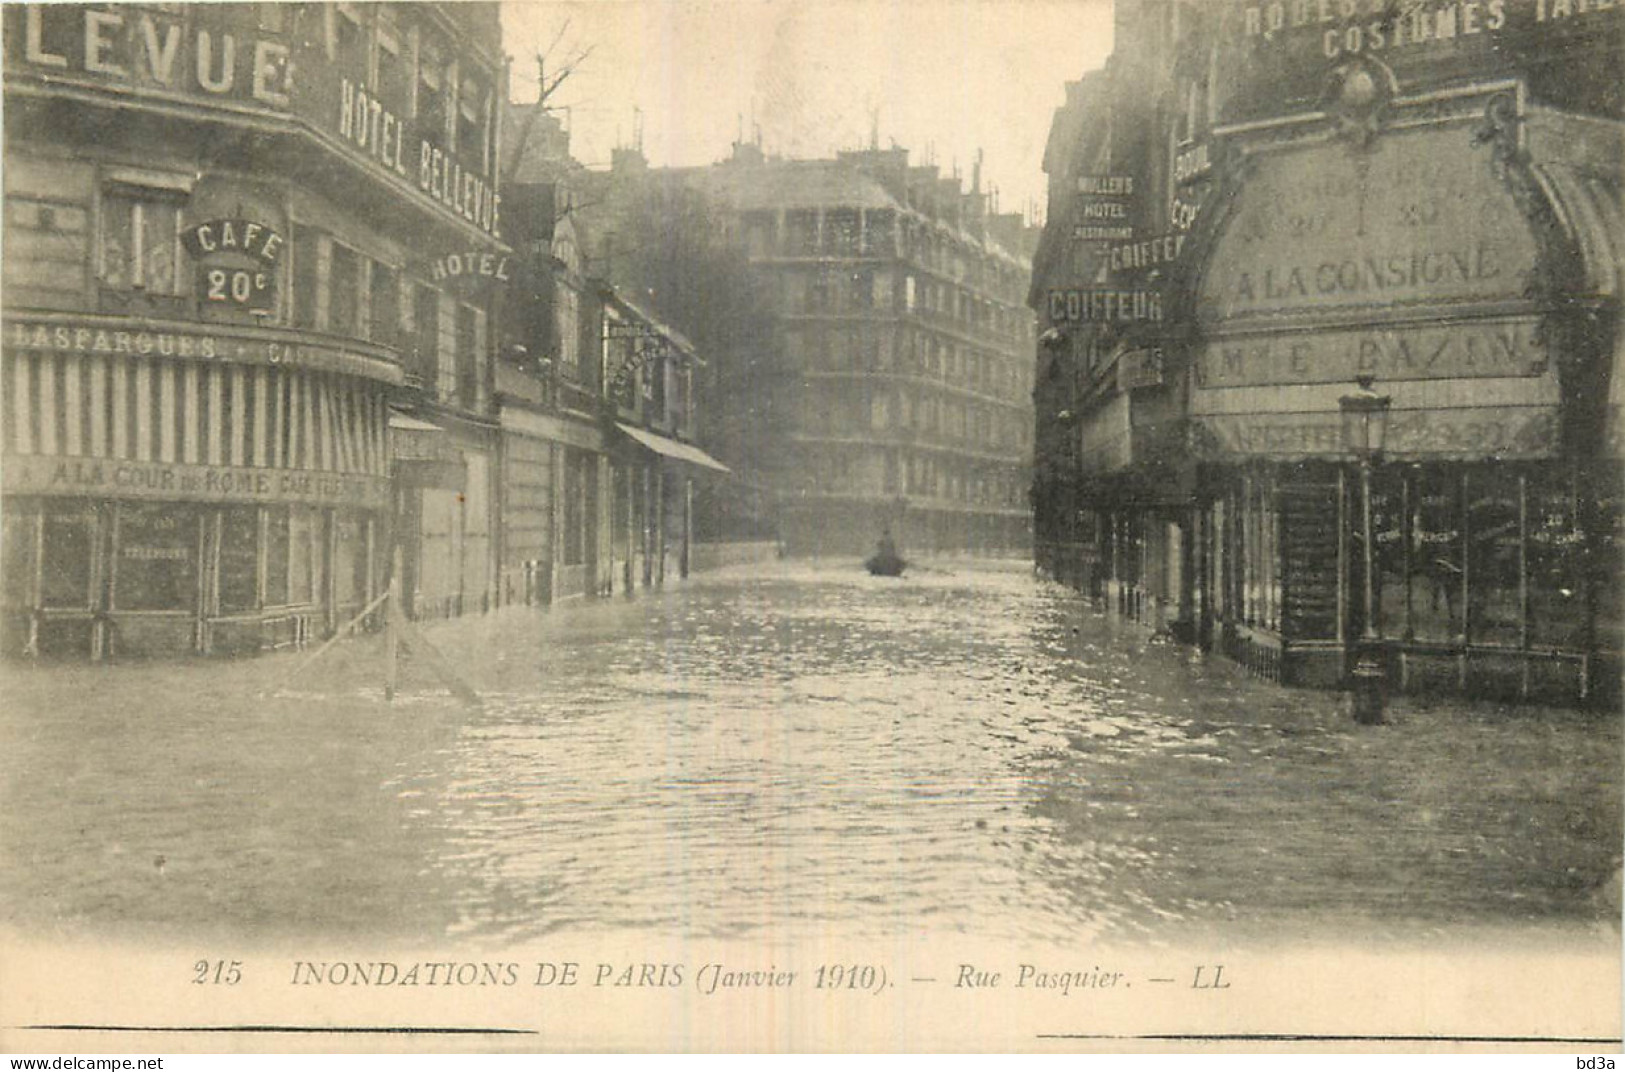 75 - INONDATIONS DE PARIS 1910 - RUE PASQUIER - Paris Flood, 1910